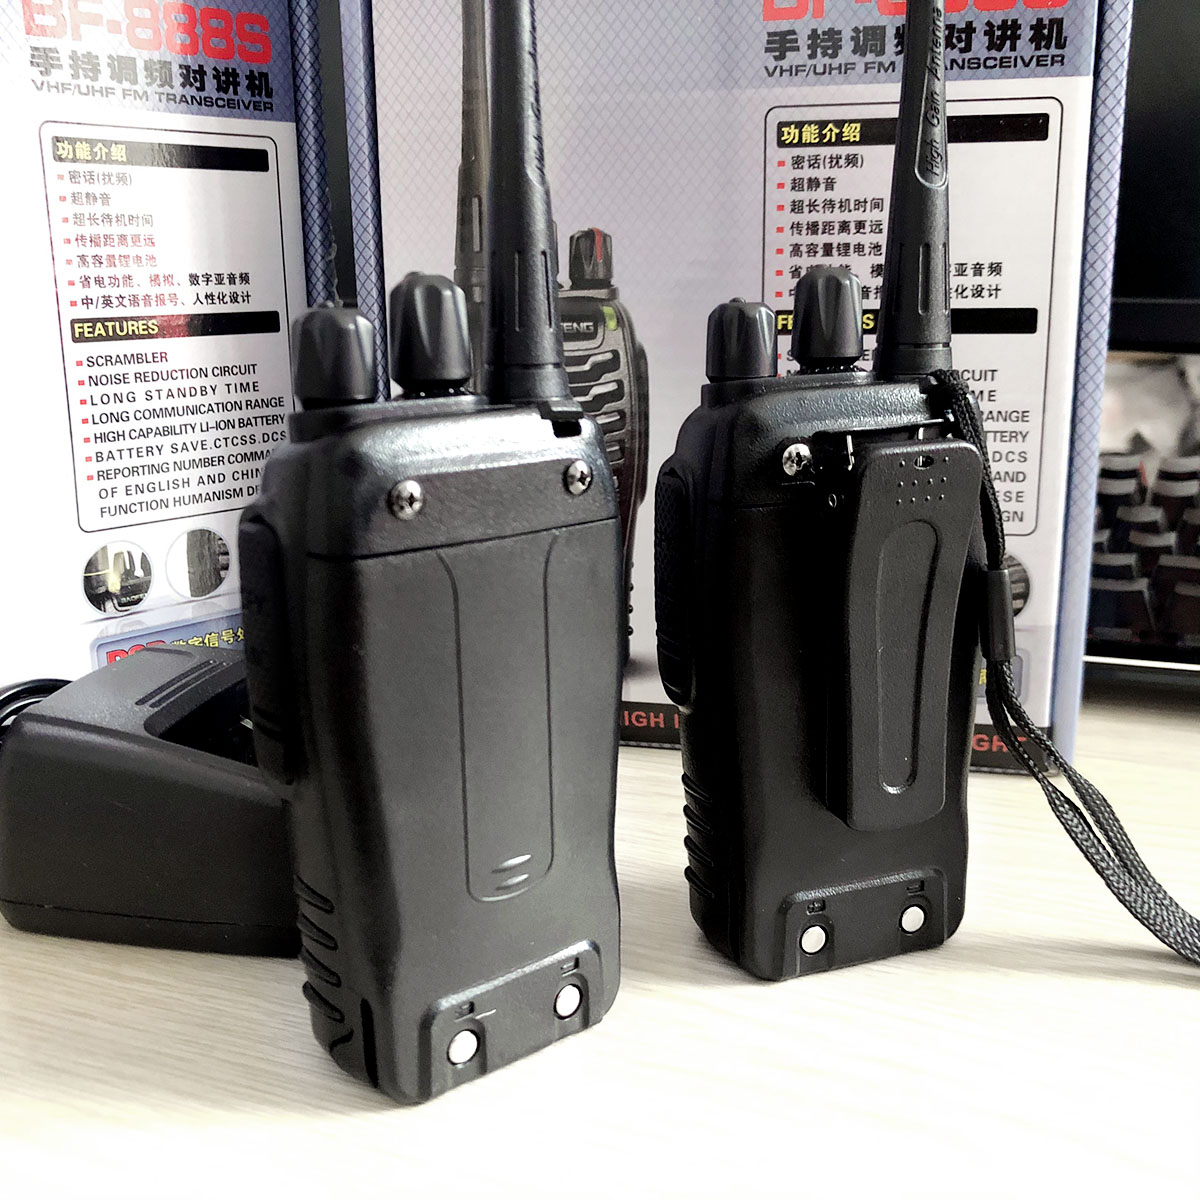 Bộ đàm Baofeng 888S phiên bản mới nhỏ gọn, liên lạc xa 2,5km, pin dùng 12 giờ, xuyên phá vật cản tốt - Hàng chính hãng